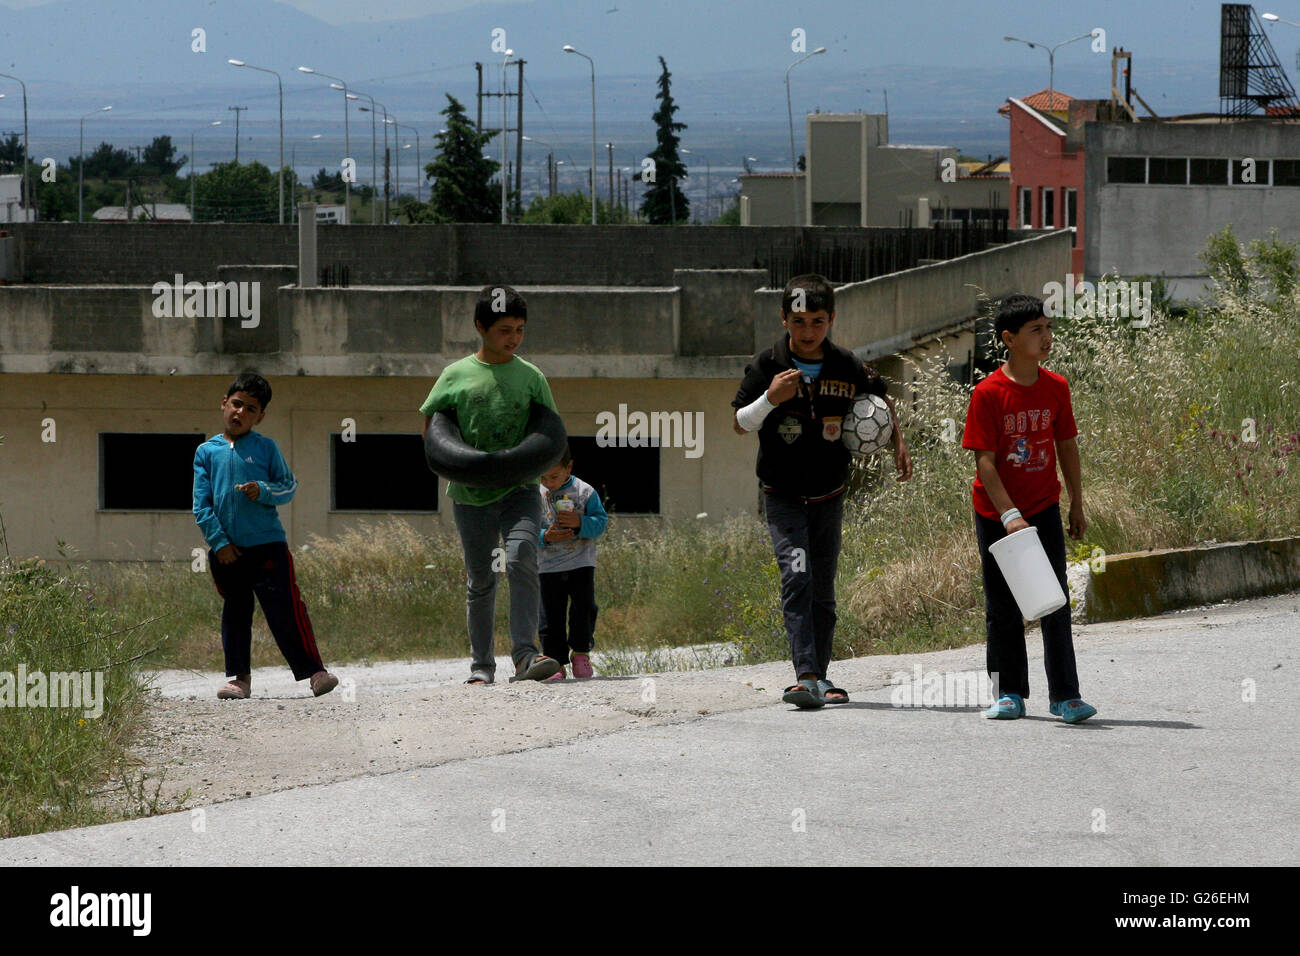 (160525) -- Thessalonique(Grèce), le 25 mai 2016 (Xinhua) -- les enfants réfugiés sont représentés à l'intérieur du nouveau centre d'accueil des réfugiés organisé de Derveni grec près de nord de la ville de Thessalonique, le 25 mai 2016. Lors d'une opération de police lancée le mardi, des milliers de réfugiés ont été réinstallés dans le camp de réfugiés de fortune d'Idomeni à la frontière entre la Grèce et l'ex-République yougoslave de Macédoine (ARYM) aux environs des installations de réception. (Xinhua/Marios Lolos) Banque D'Images